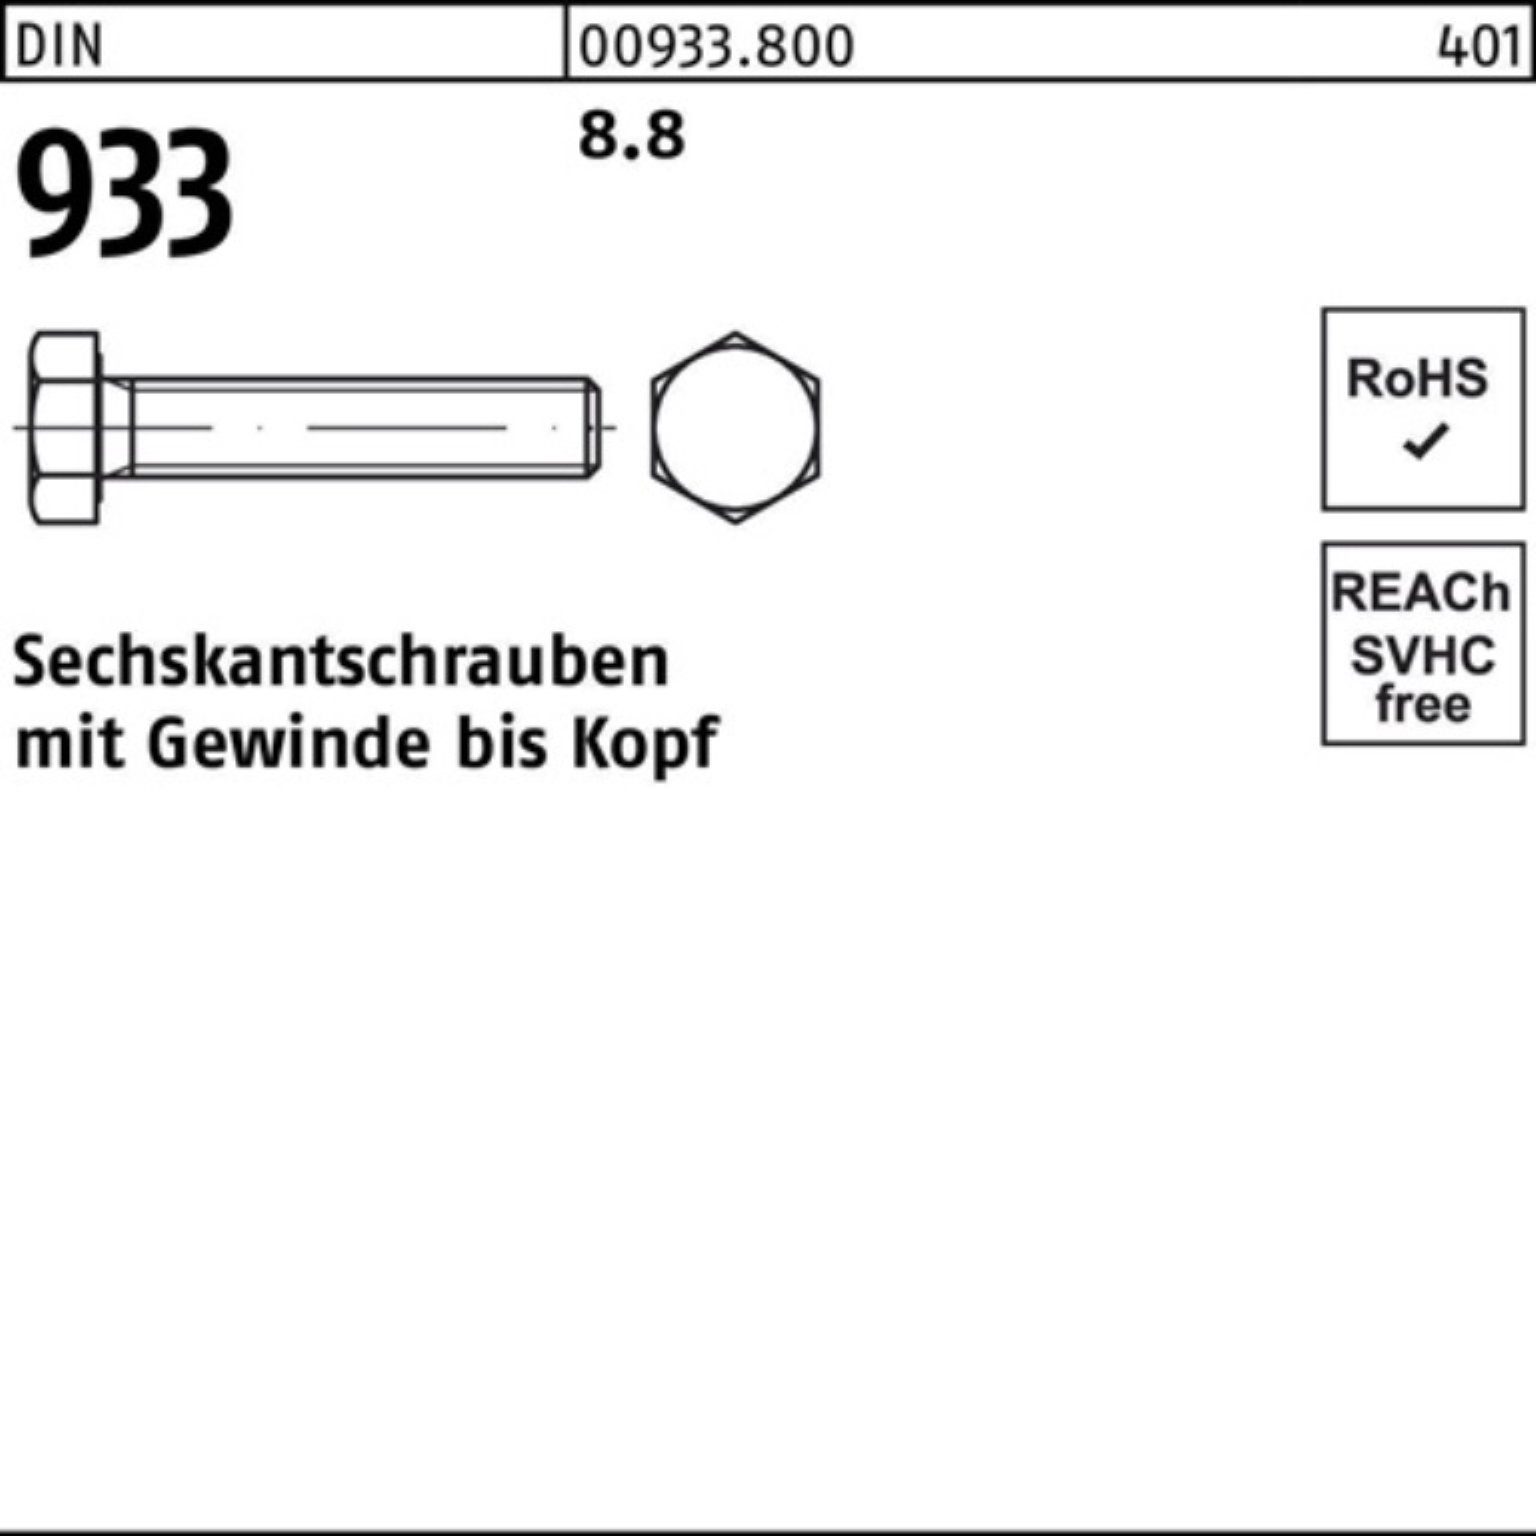 Sechskantschraube Sechskantschraube 380 DIN VG 8.8 M30x DIN 933 100er 1 Stück Pack 933 Reyher